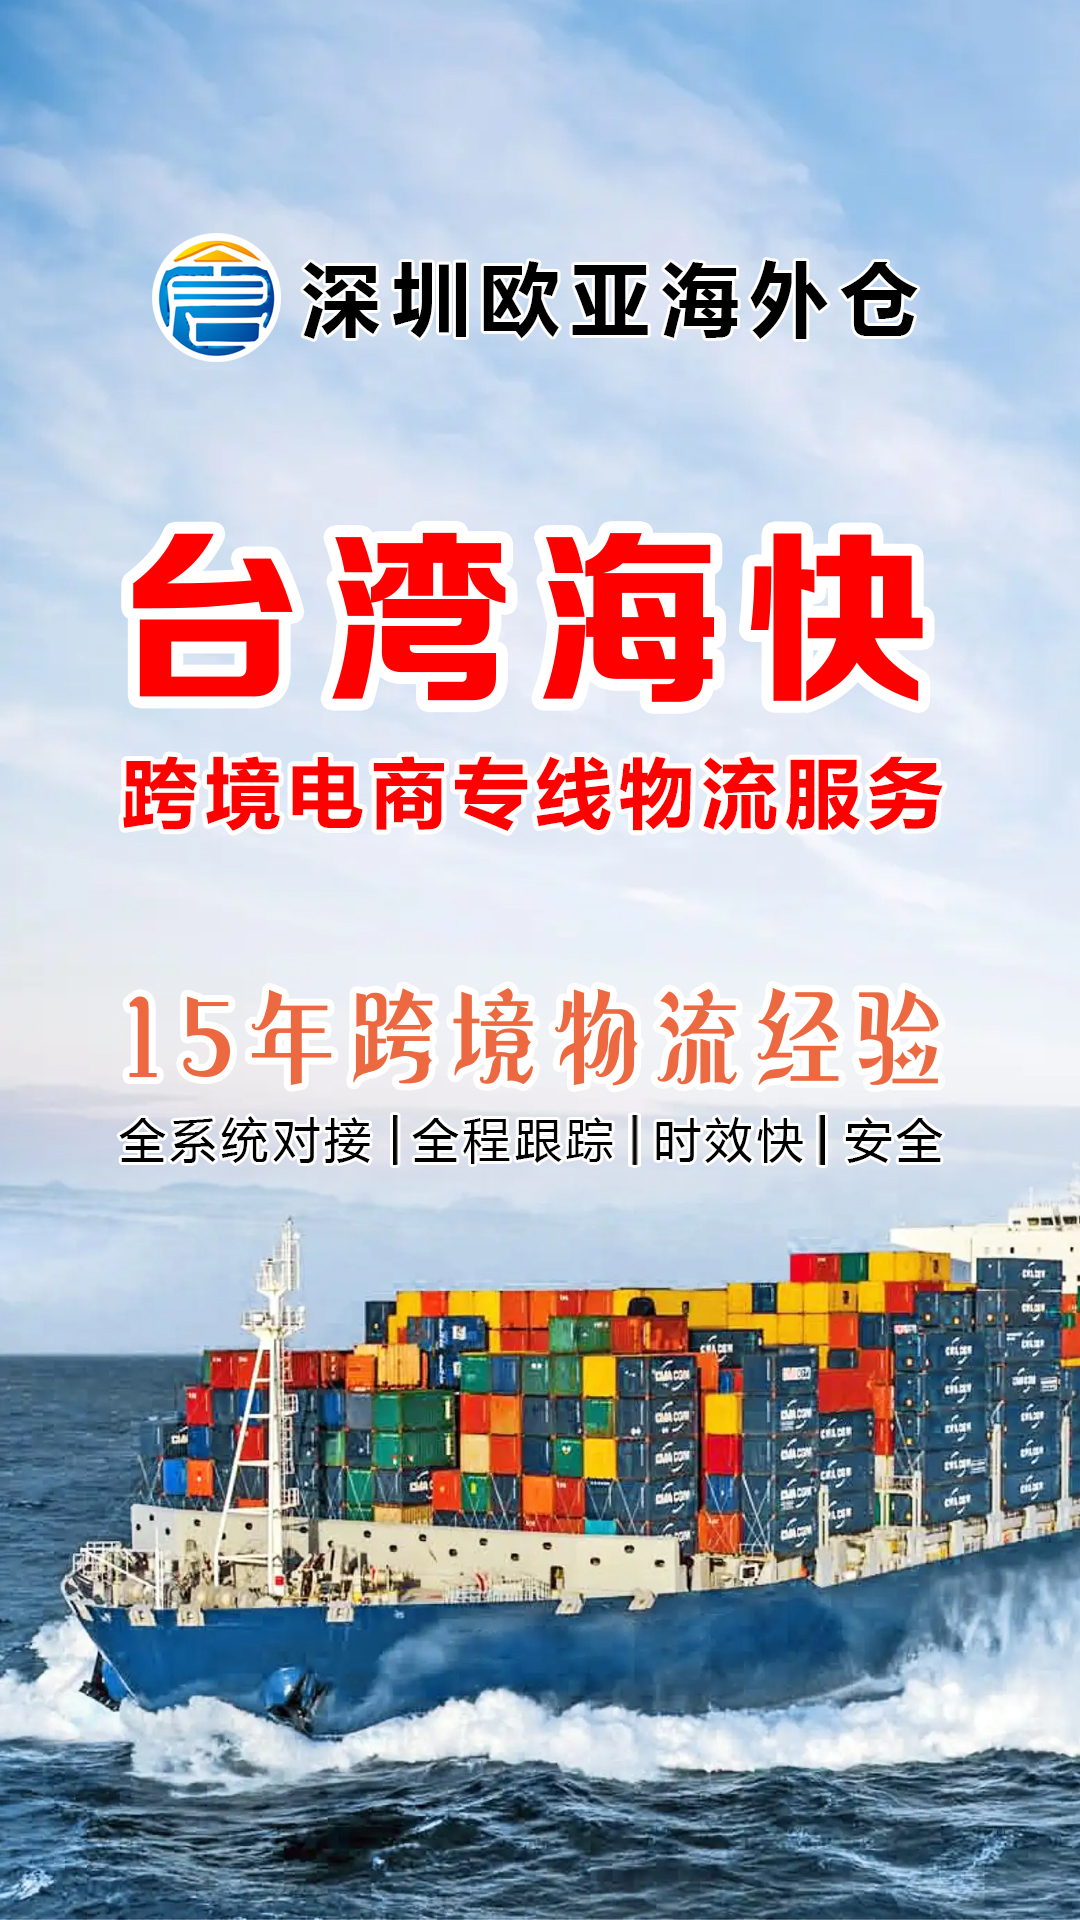 大陸到台湾专线集运、台湾海快货代、跨境电商专线物流服务！